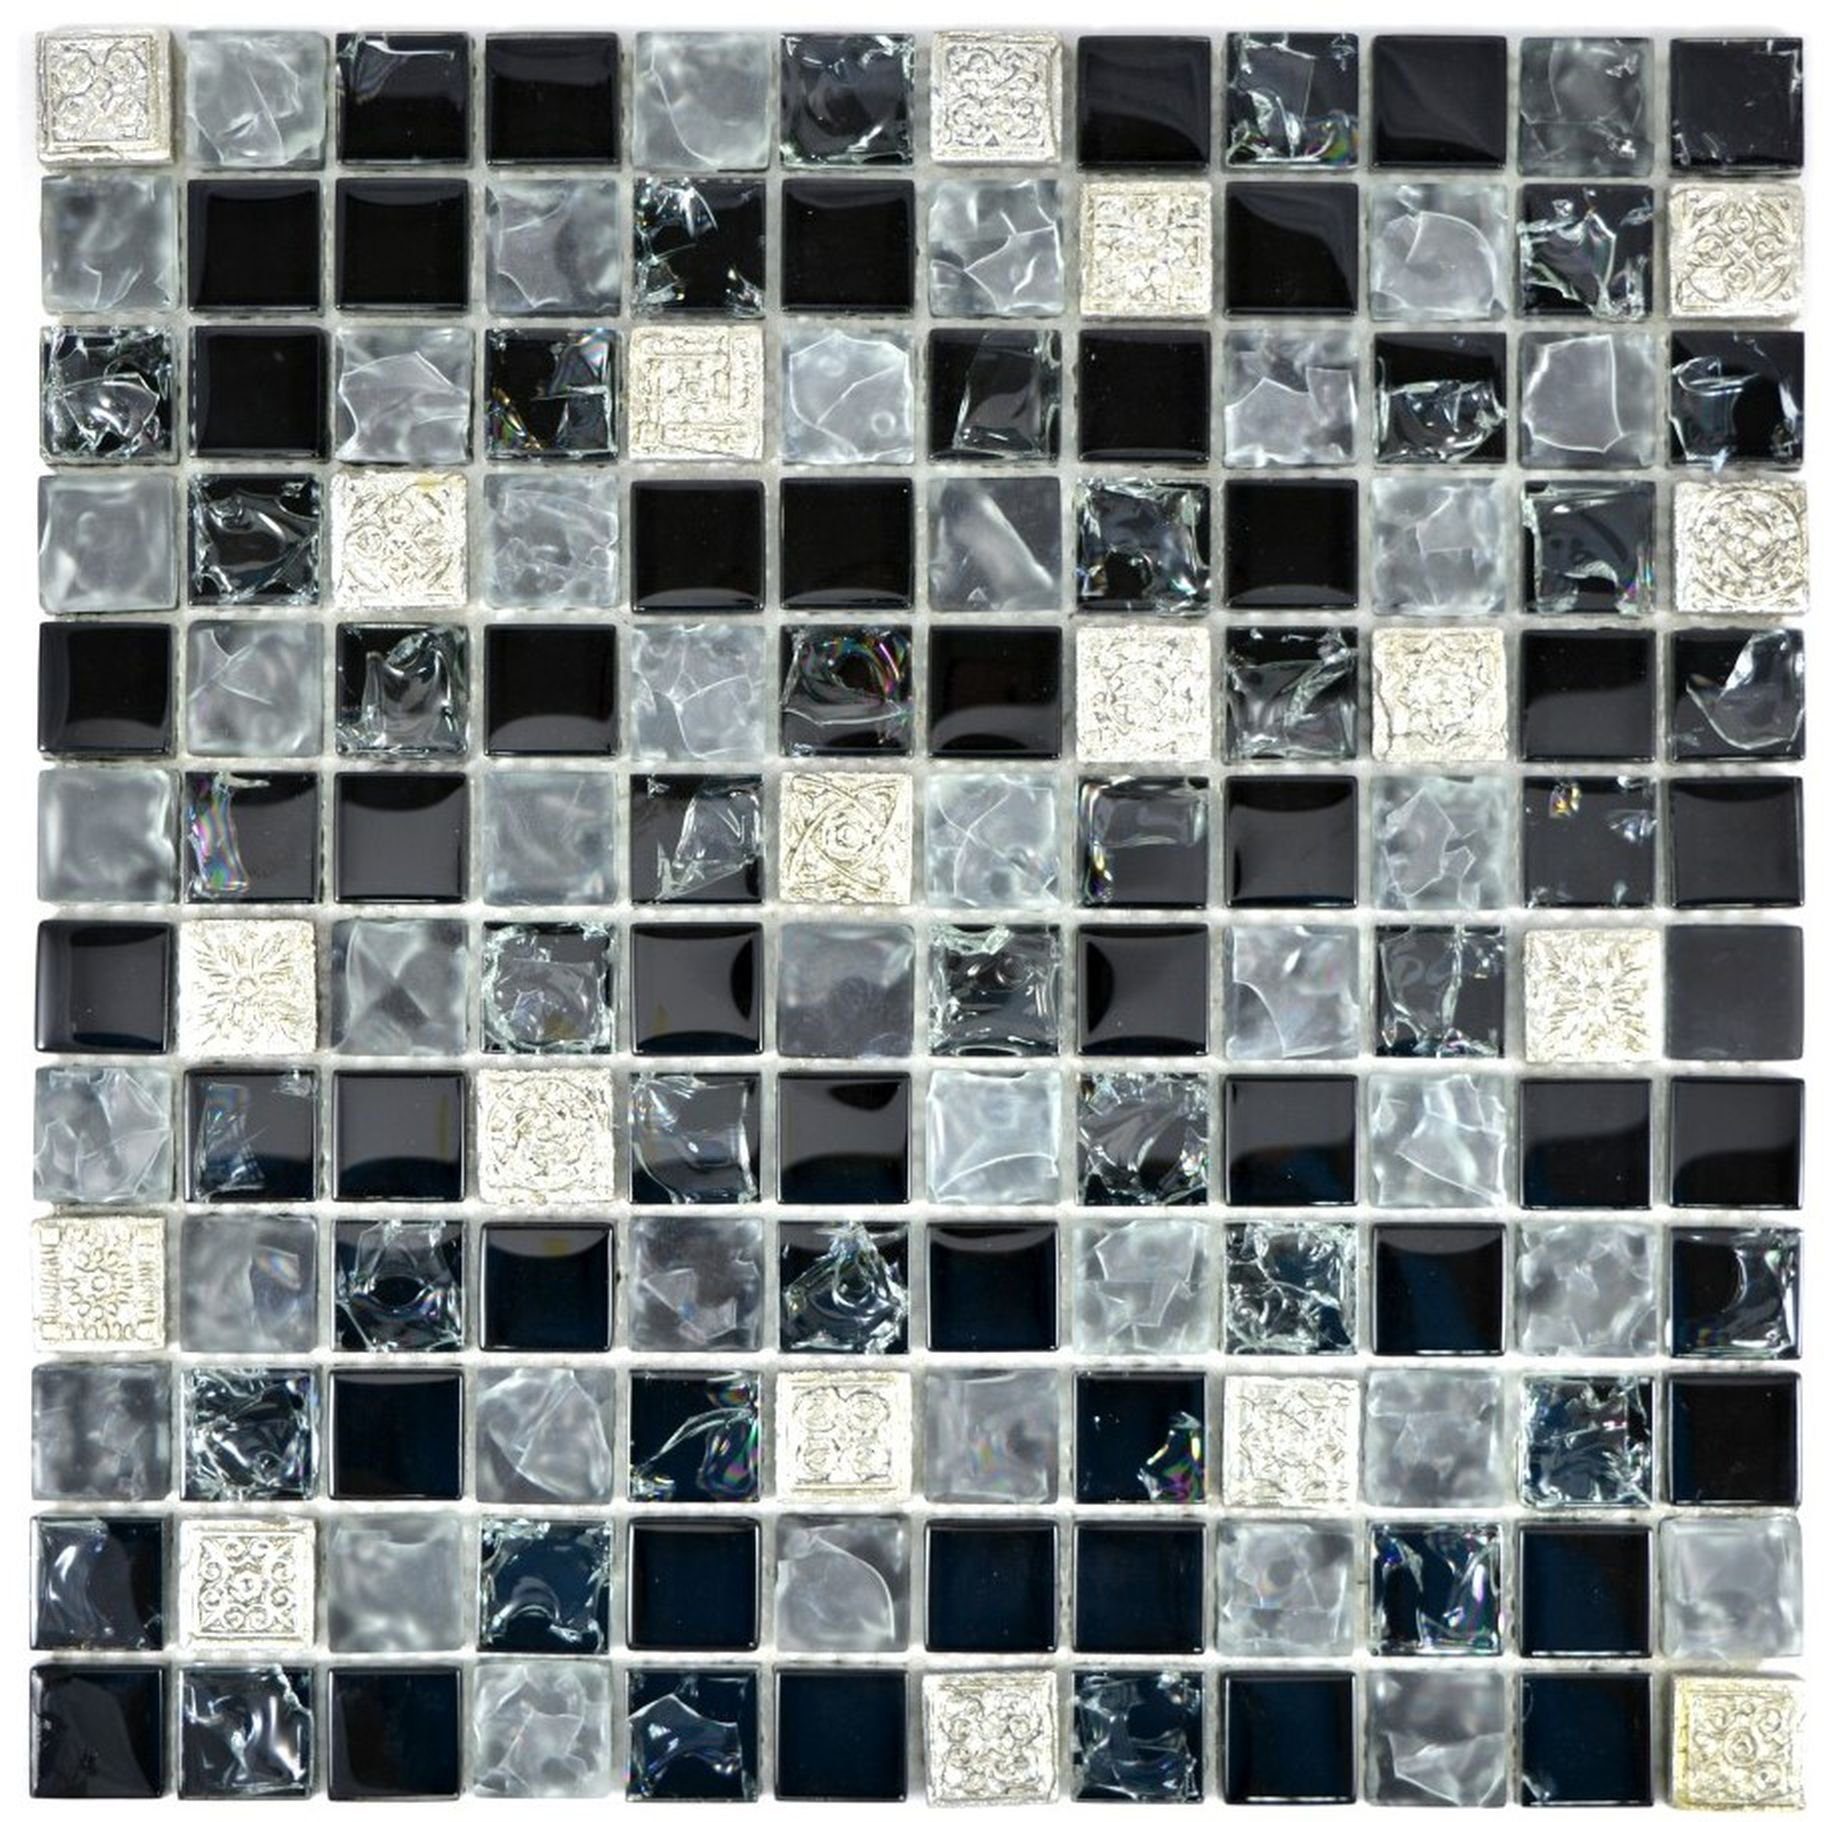 Mosani Mosaikfliesen Glasmosaik Mosaikfliesen grau schwarz Resin silber gefrostet | Fliesen